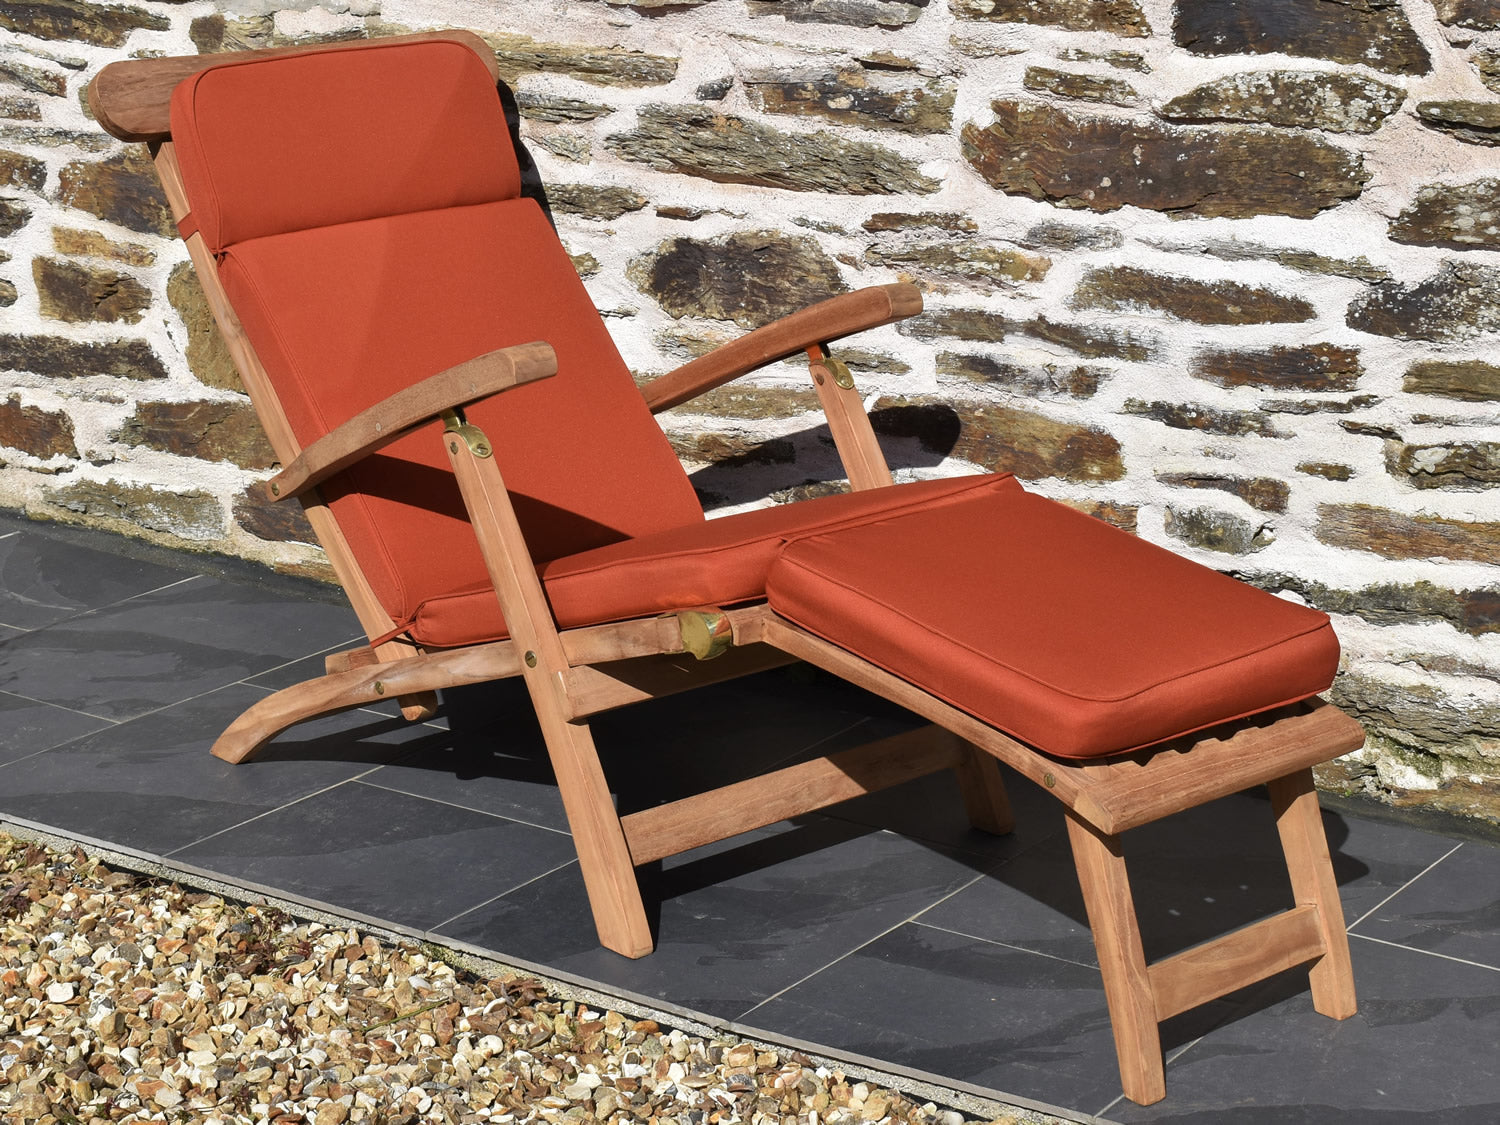 Classic terracotta orange colour garden steamer chair cushion